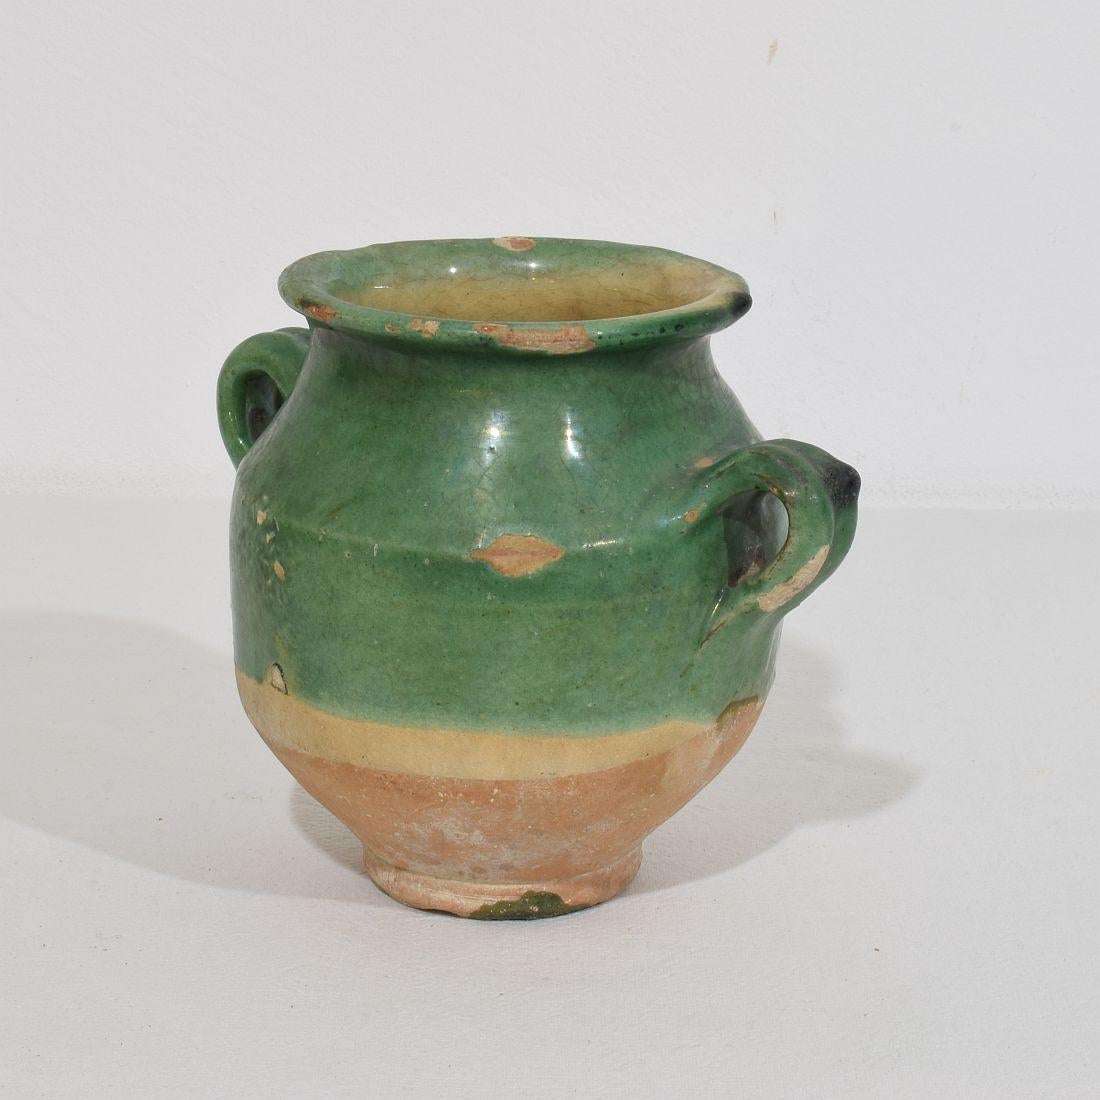 Vernissé Petite jarre à confit en céramique verte du 19ème siècle.